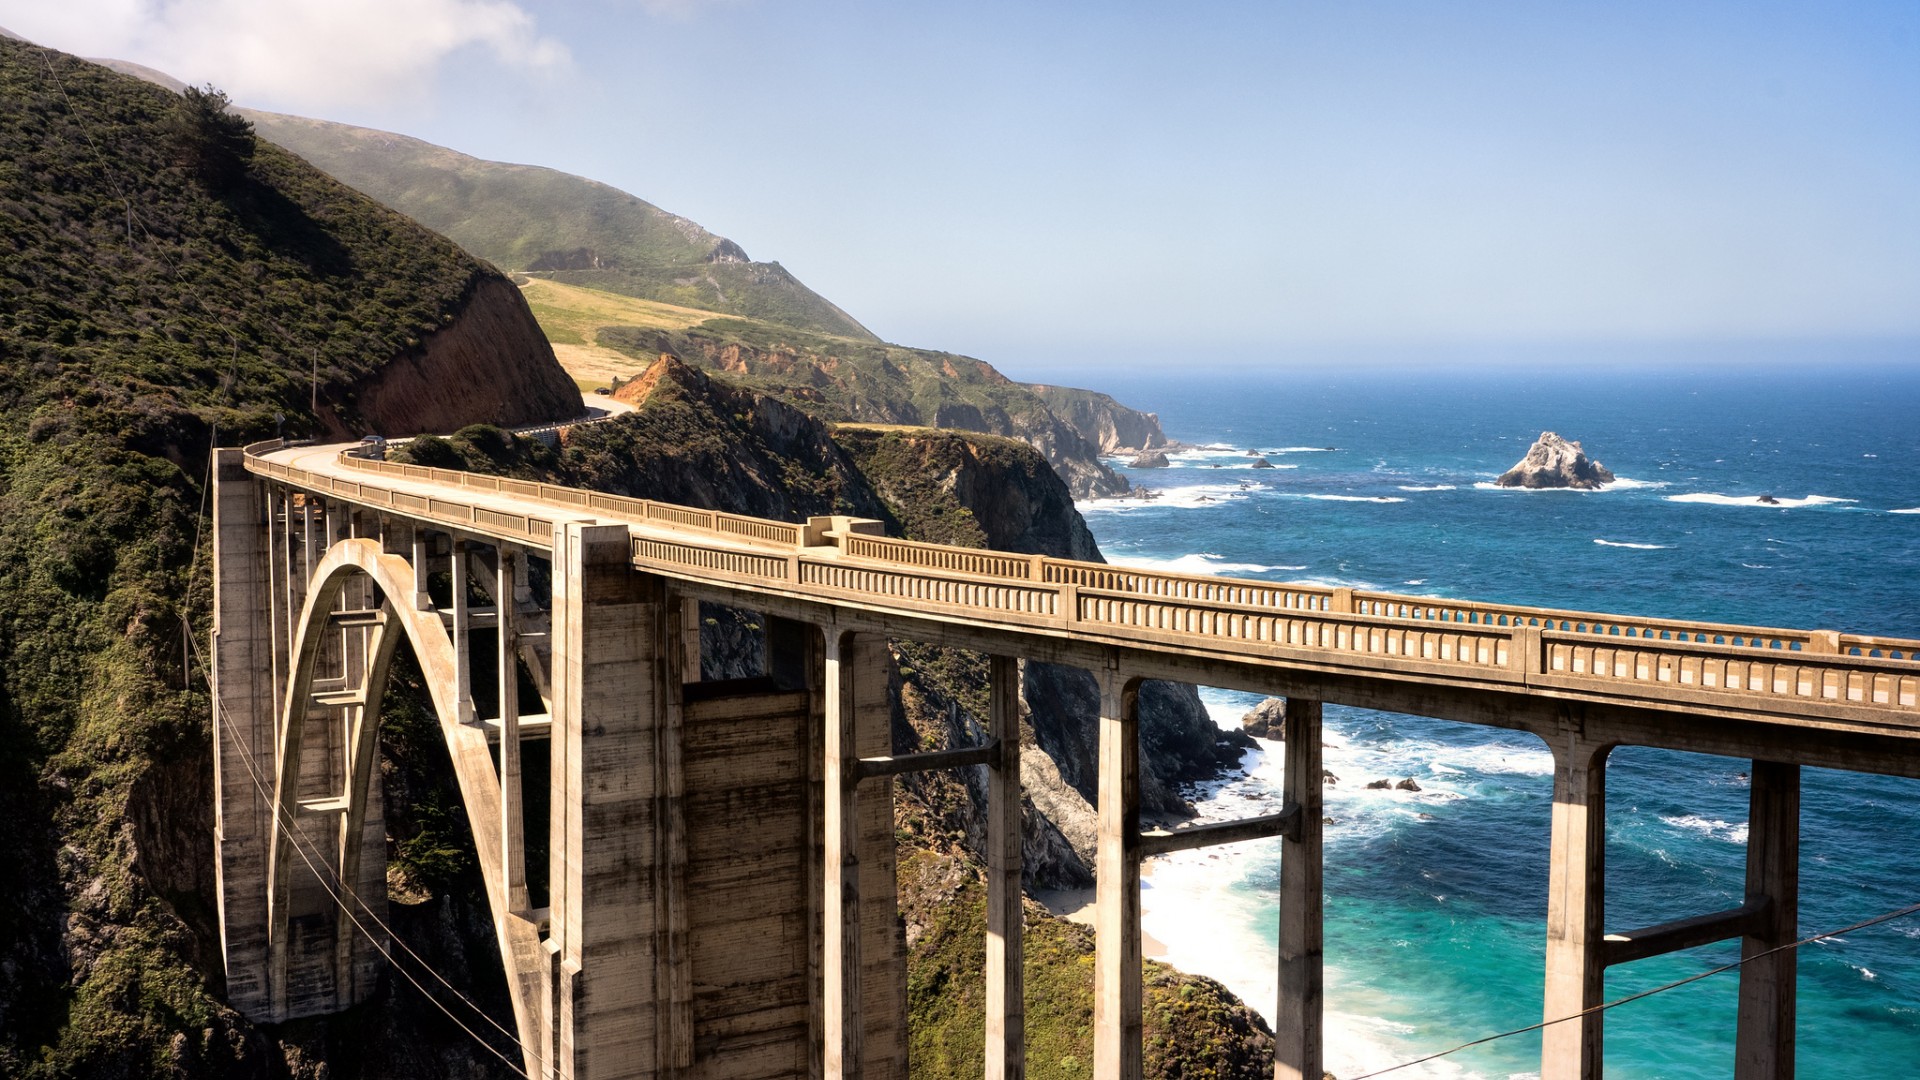 加州 西海岸 桥梁 路 海滩 风景壁纸 风景壁纸 壁纸下载 彼岸桌面